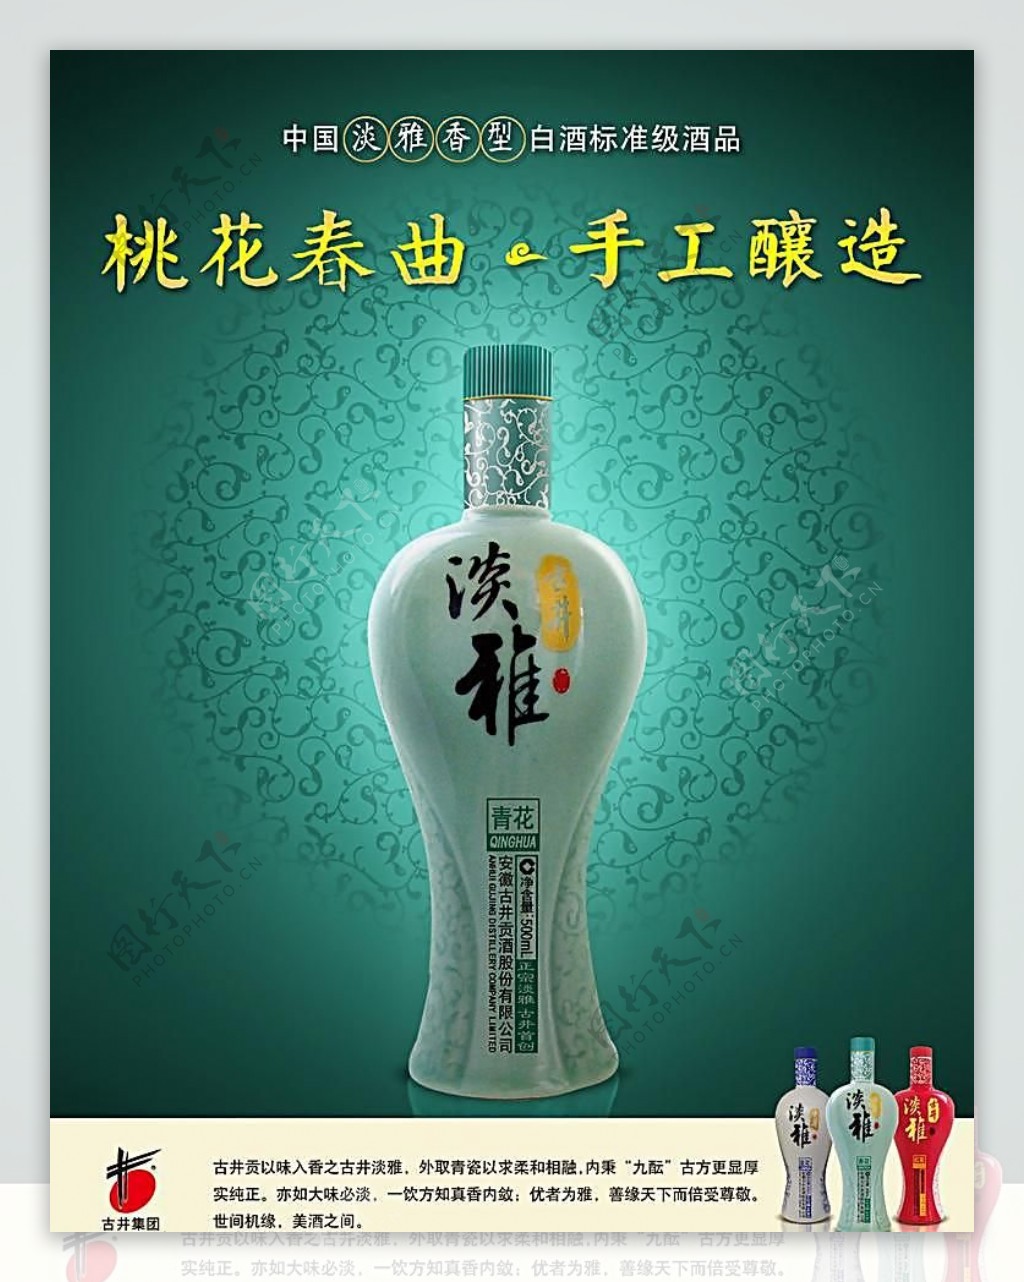 古井贡酒淡雅系列广告画面